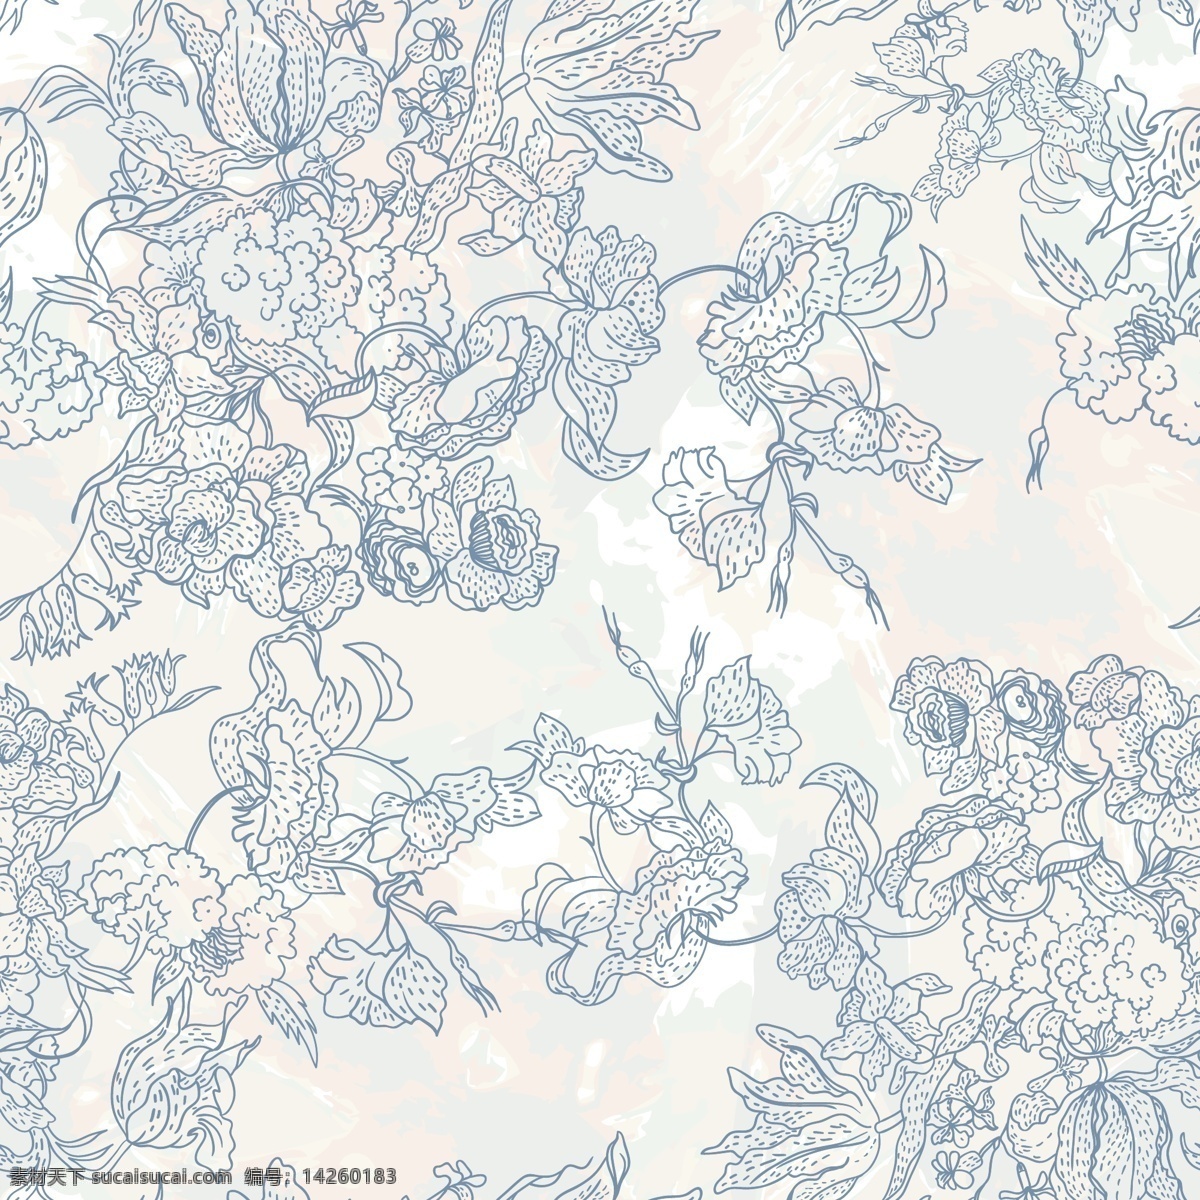 蓝色 手绘 花朵 剪影 背景壁纸 花卉和漩涡 纹理和图案